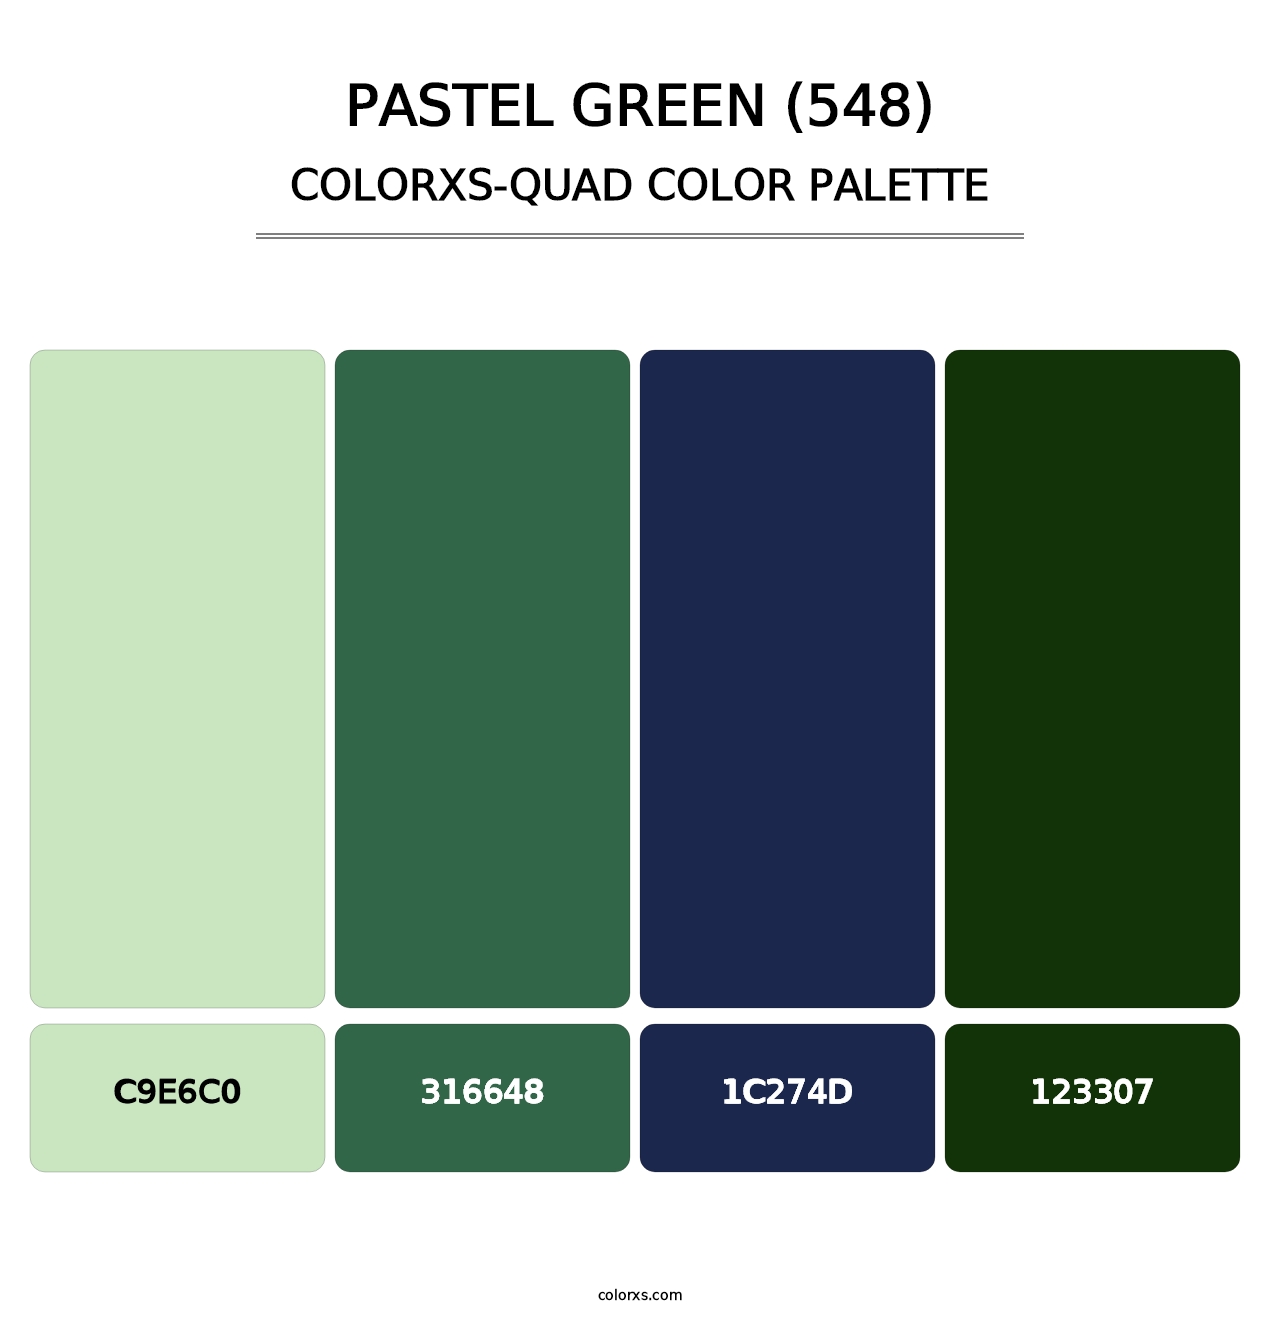 Pastel Green (548) - Colorxs Quad Palette